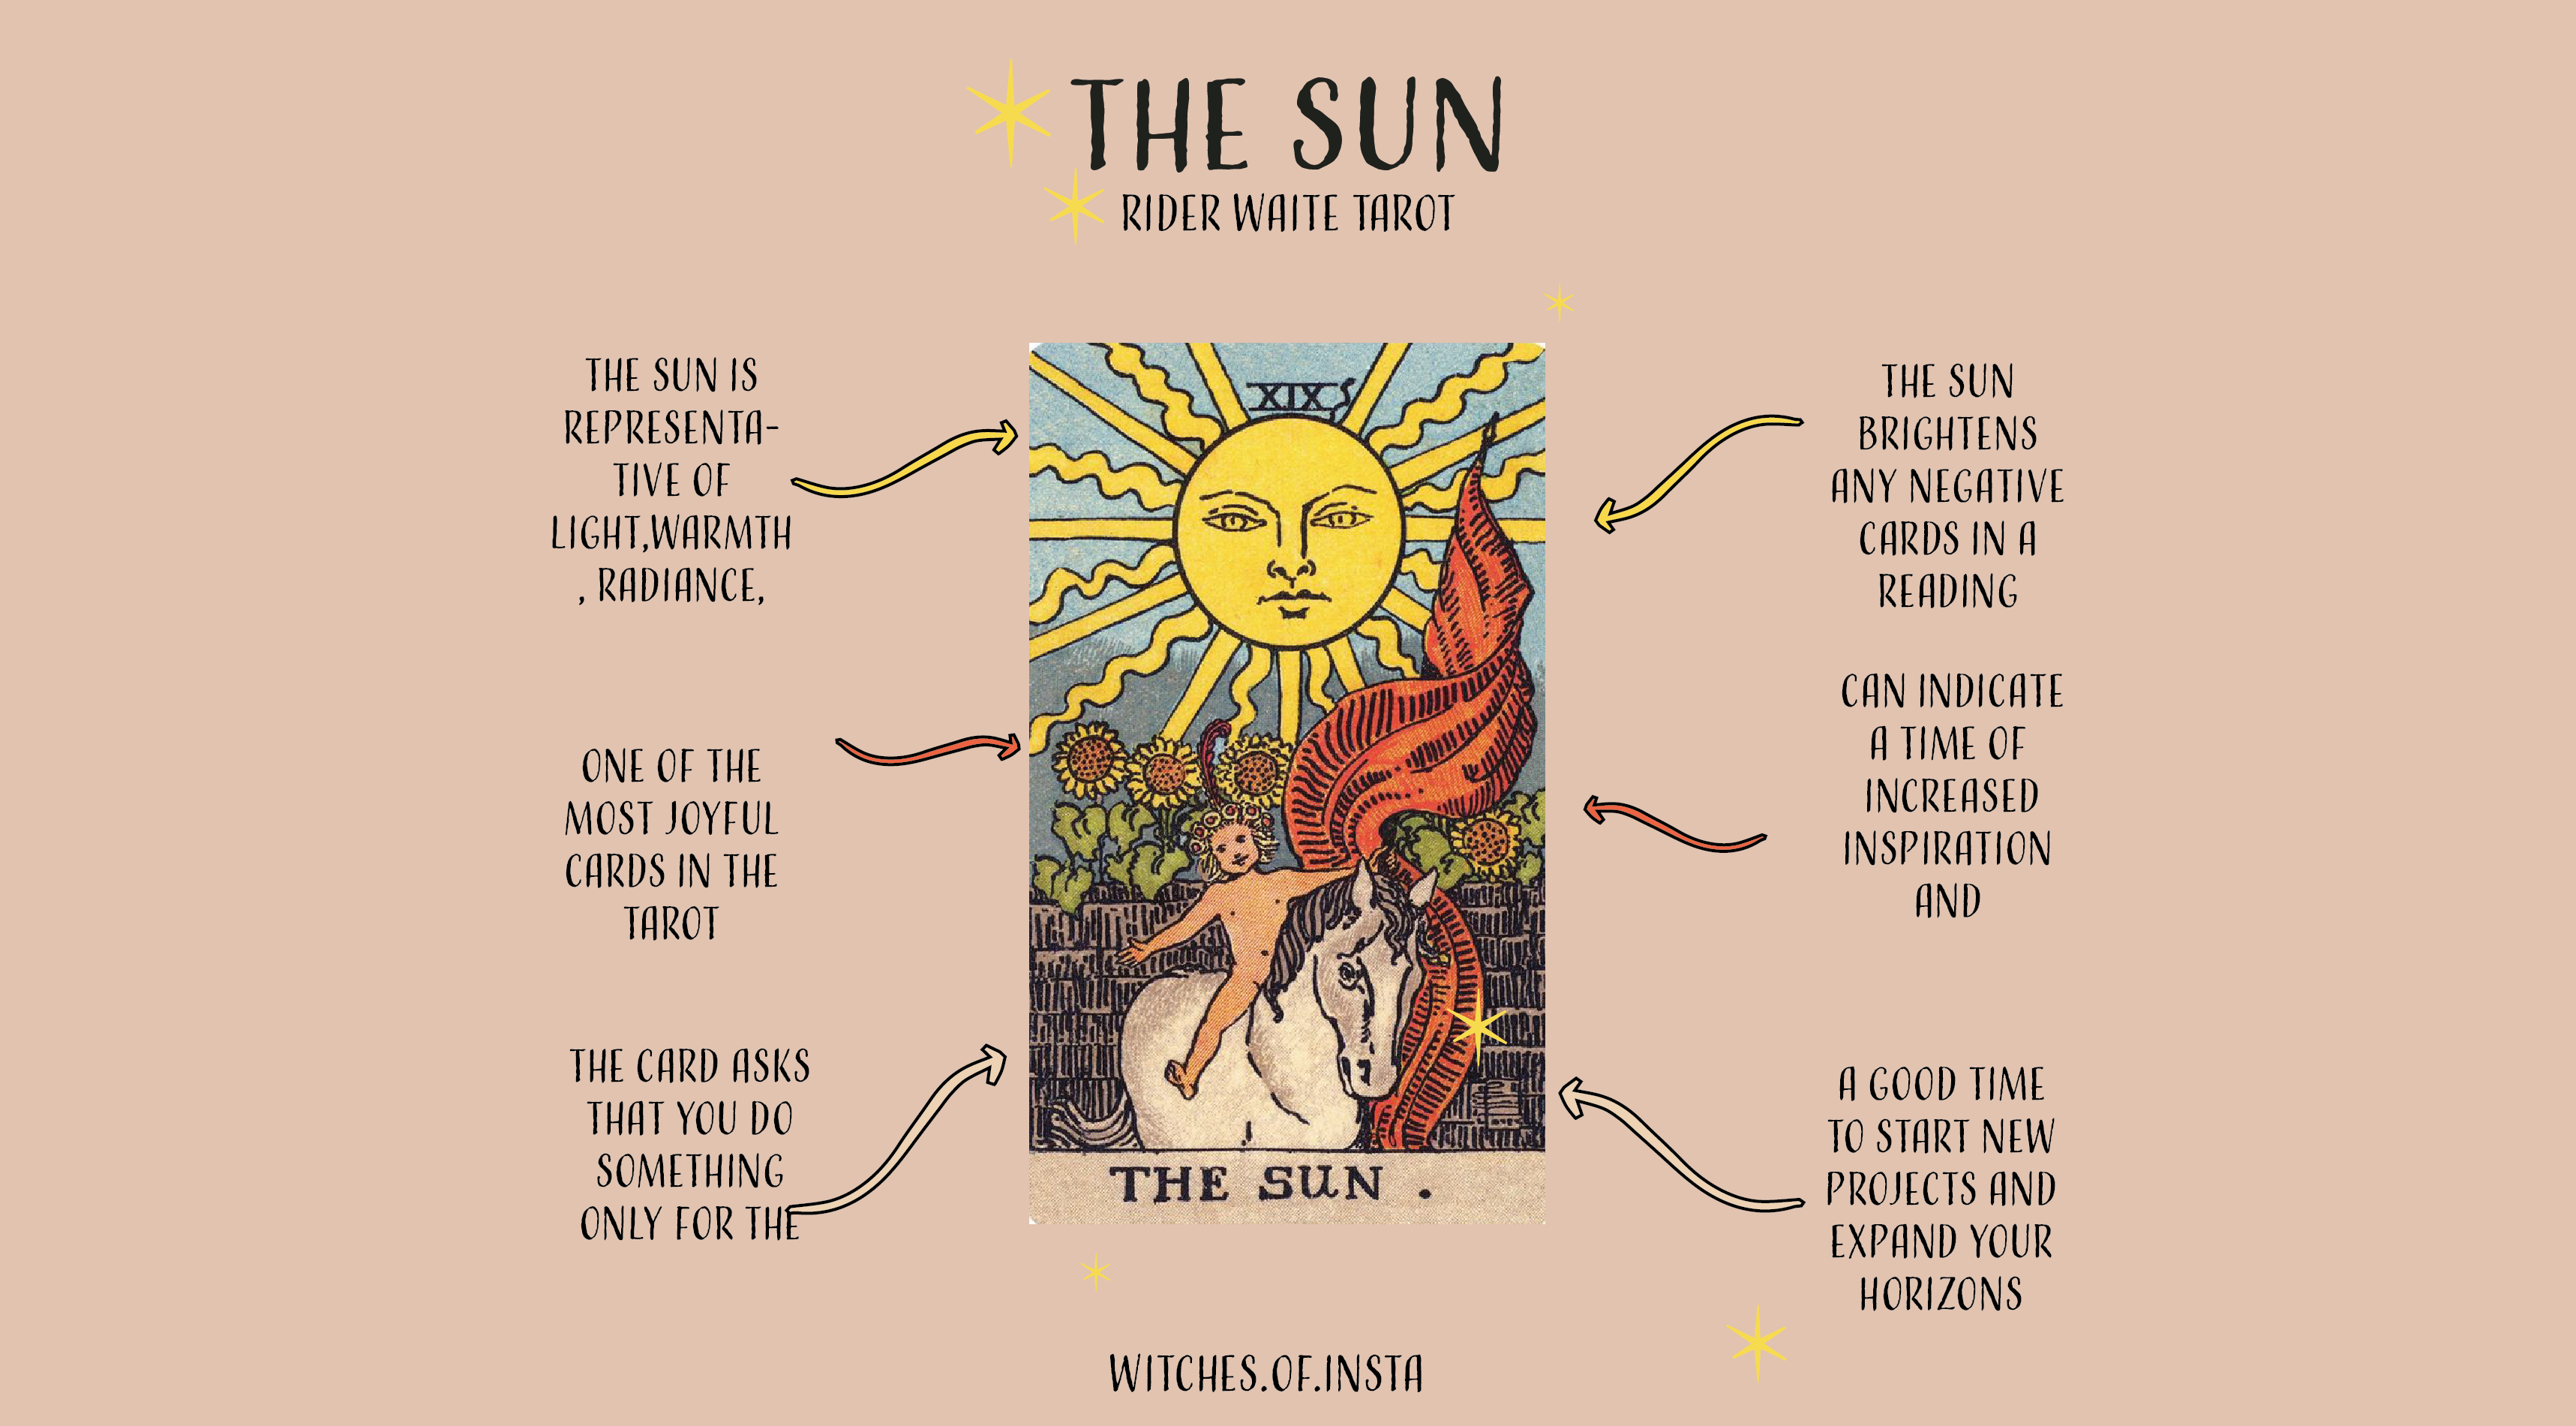 The sun card